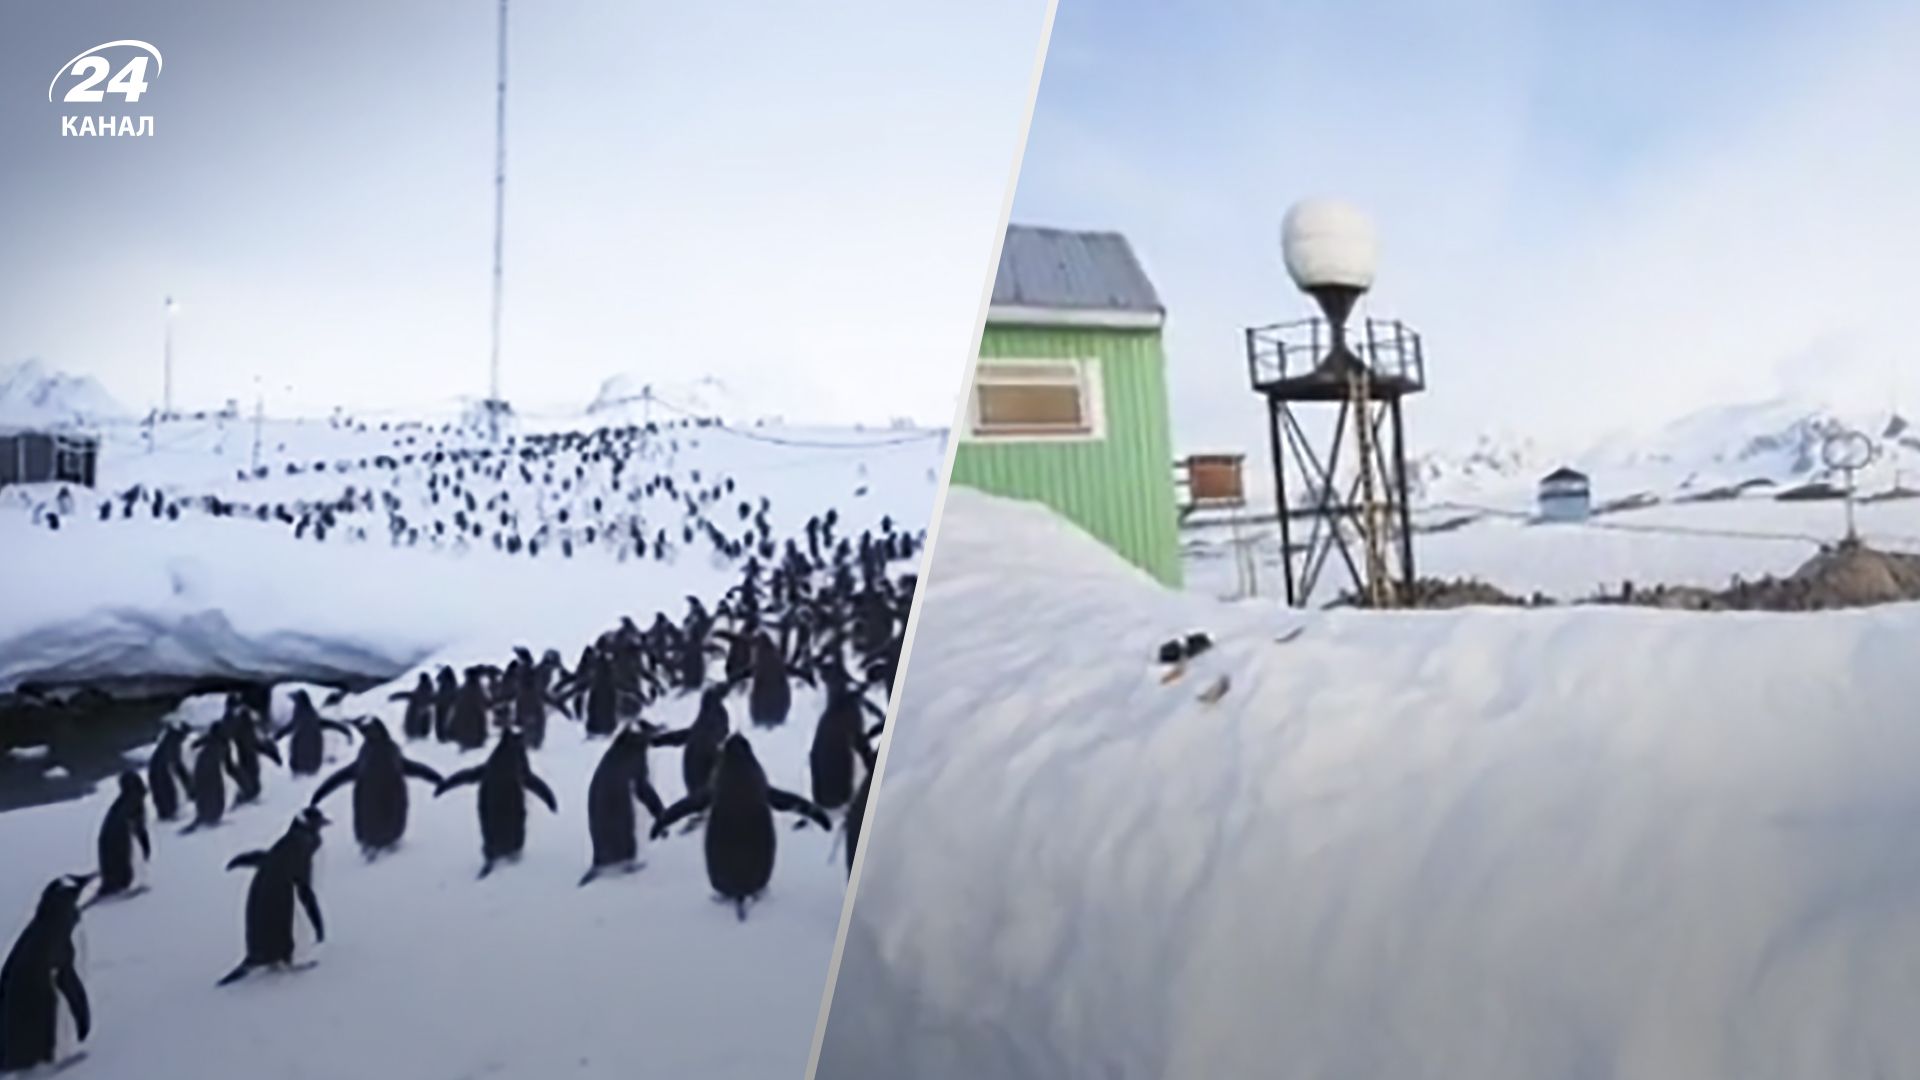 Станцию Академик Вернадский атаковали пингвины - смотрите видео